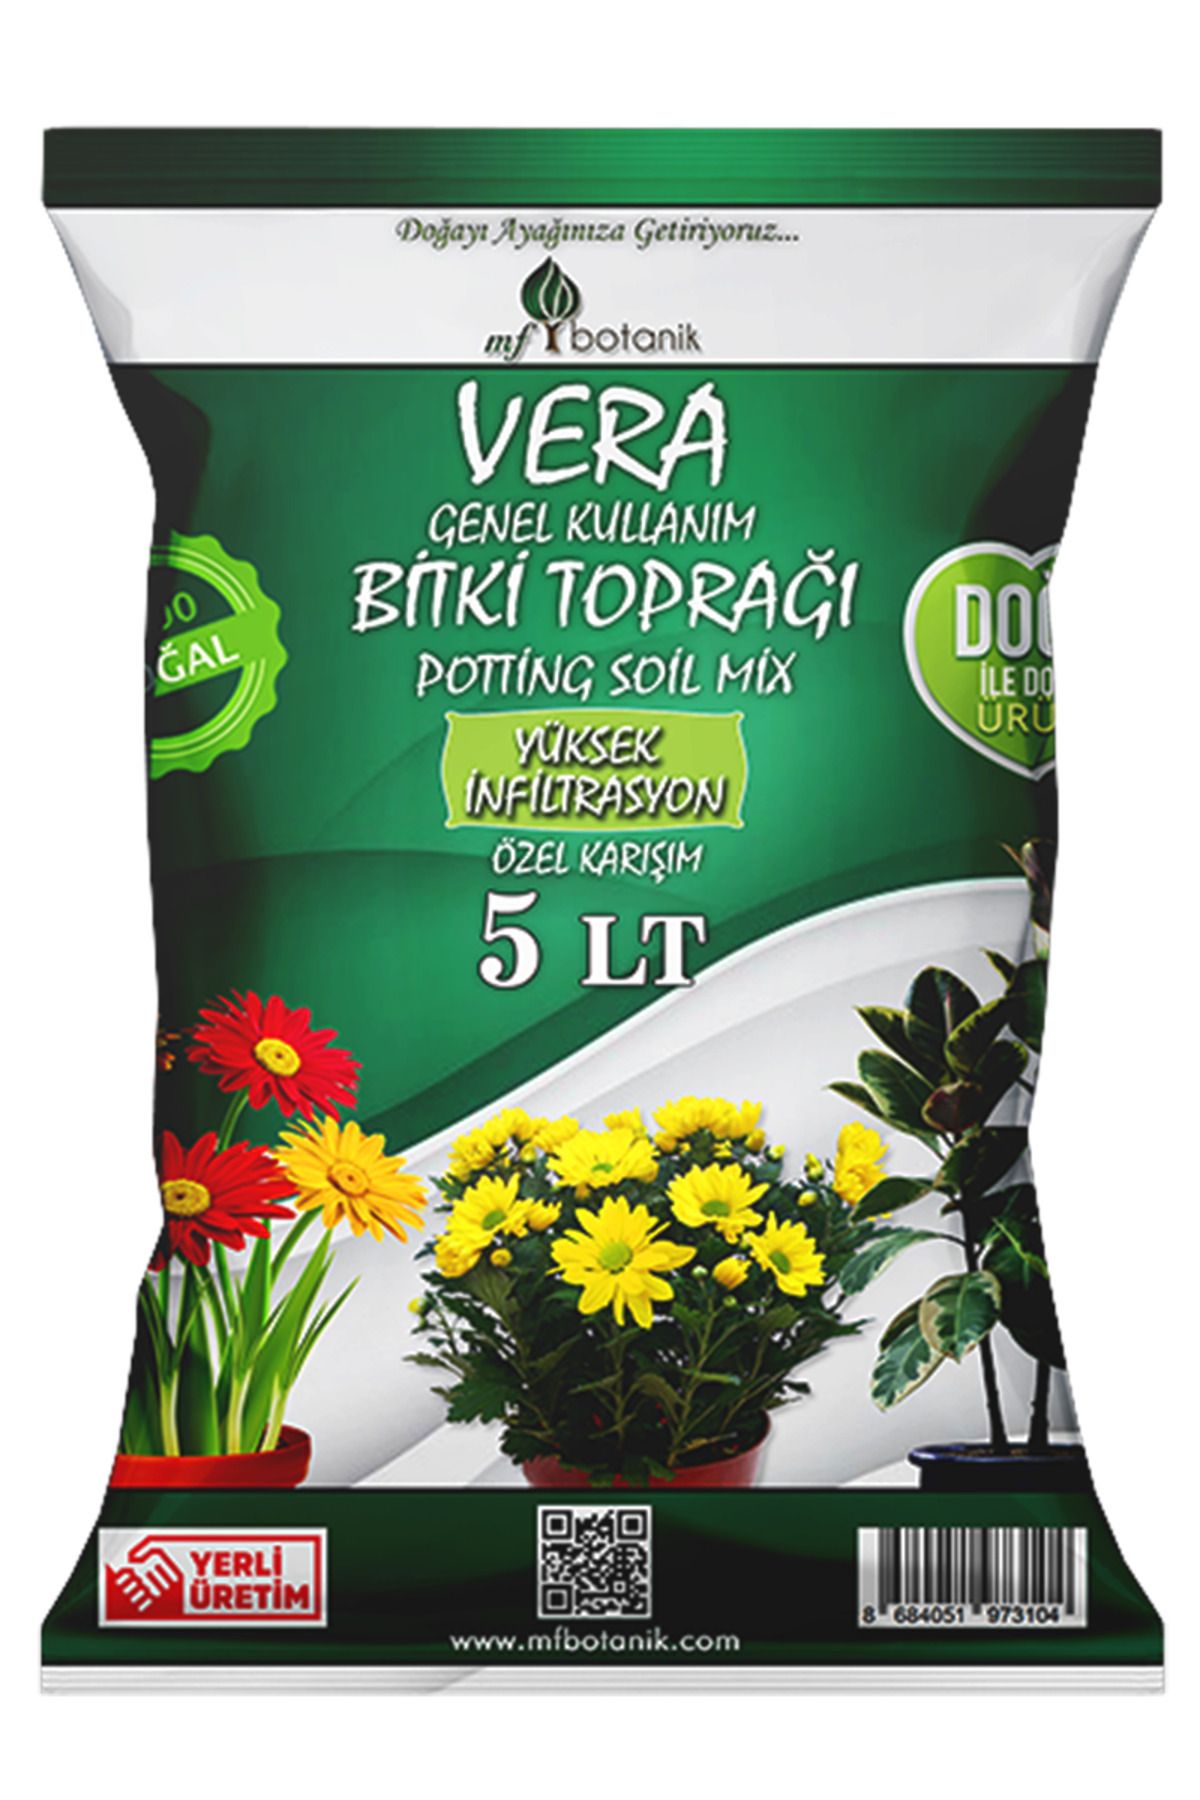 MF Botanik Vera Genel Kullanım Özel Karışım Iç Ve Dış Mekan Bitki Toprağı 5 Litre Çiçek Toprağı Toprak Harcı